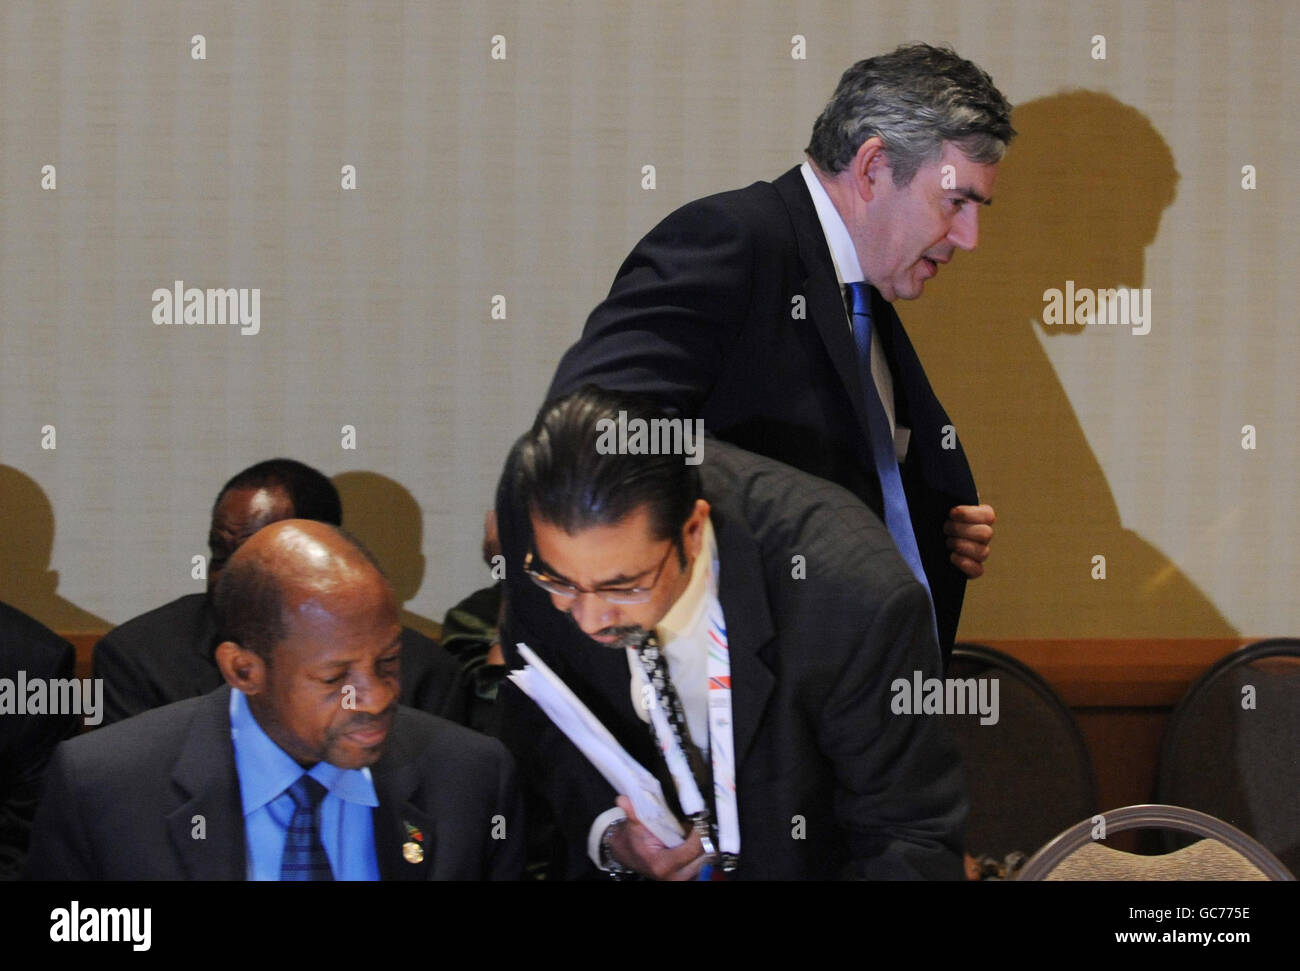 Le Premier ministre britannique Gordon Brown (arrière à droite) arrive à une réunion des pays des Caraïbes lors de la réunion des chefs de gouvernement du Commonwealth à Trinidad. Banque D'Images